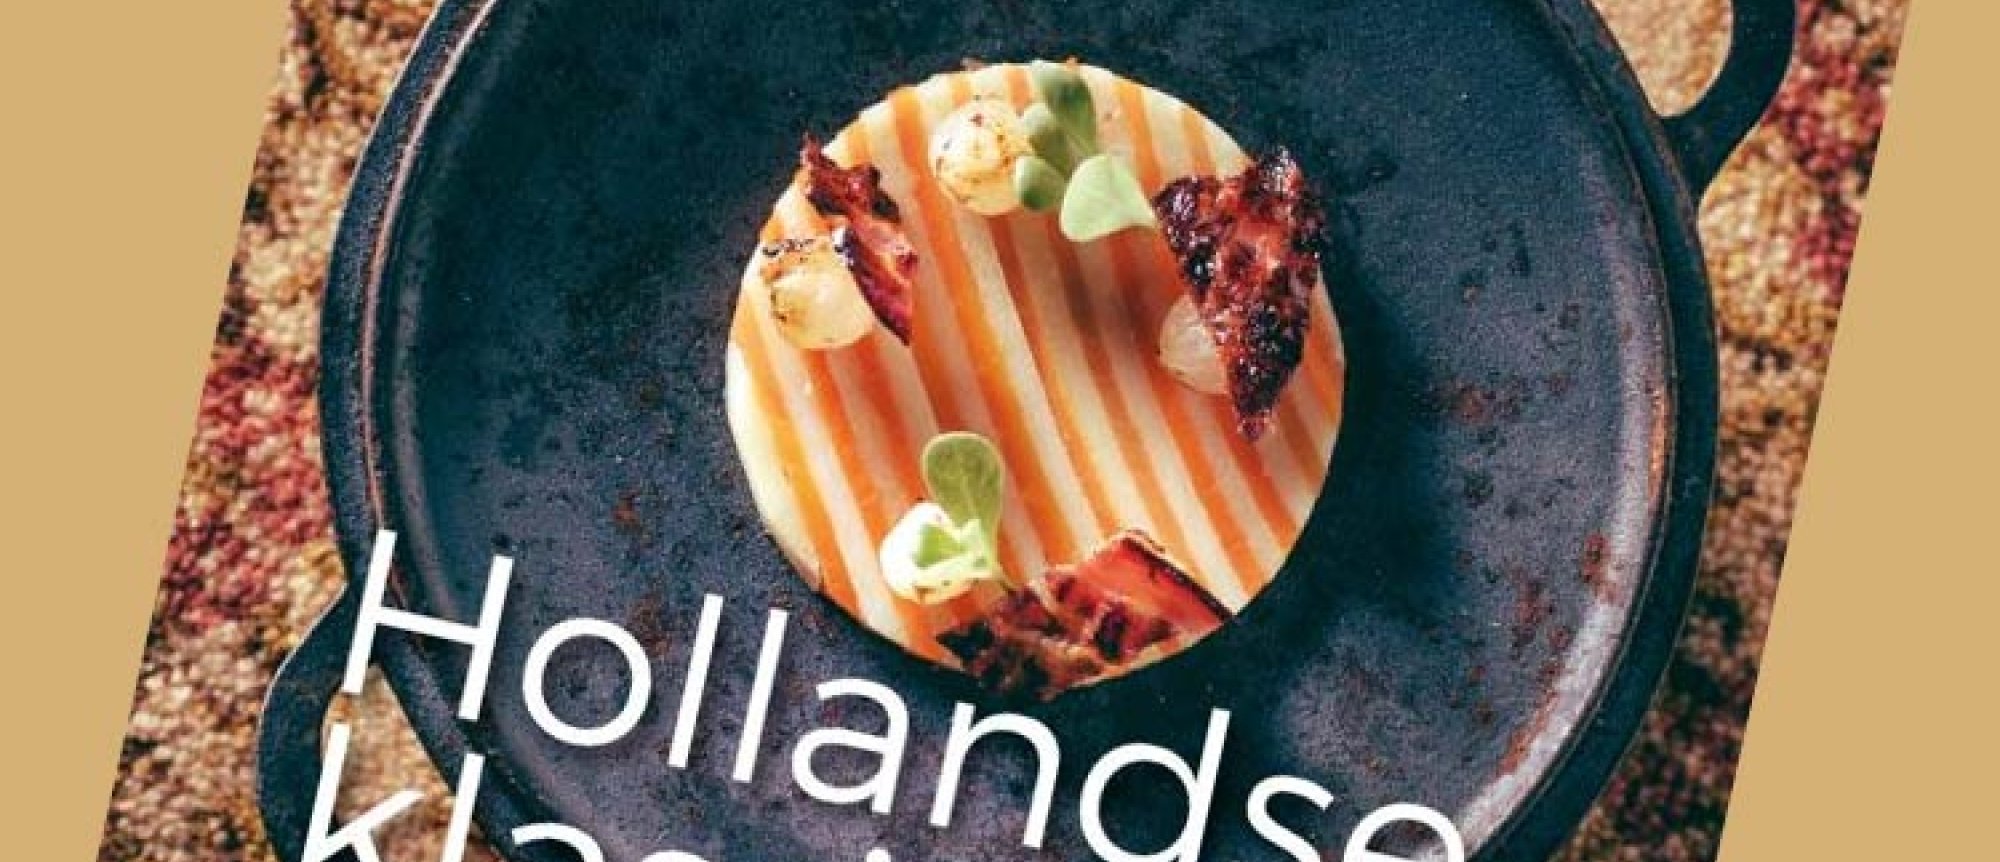 Hollandse klassiekers anno nu Kookboek van de Maand augustus